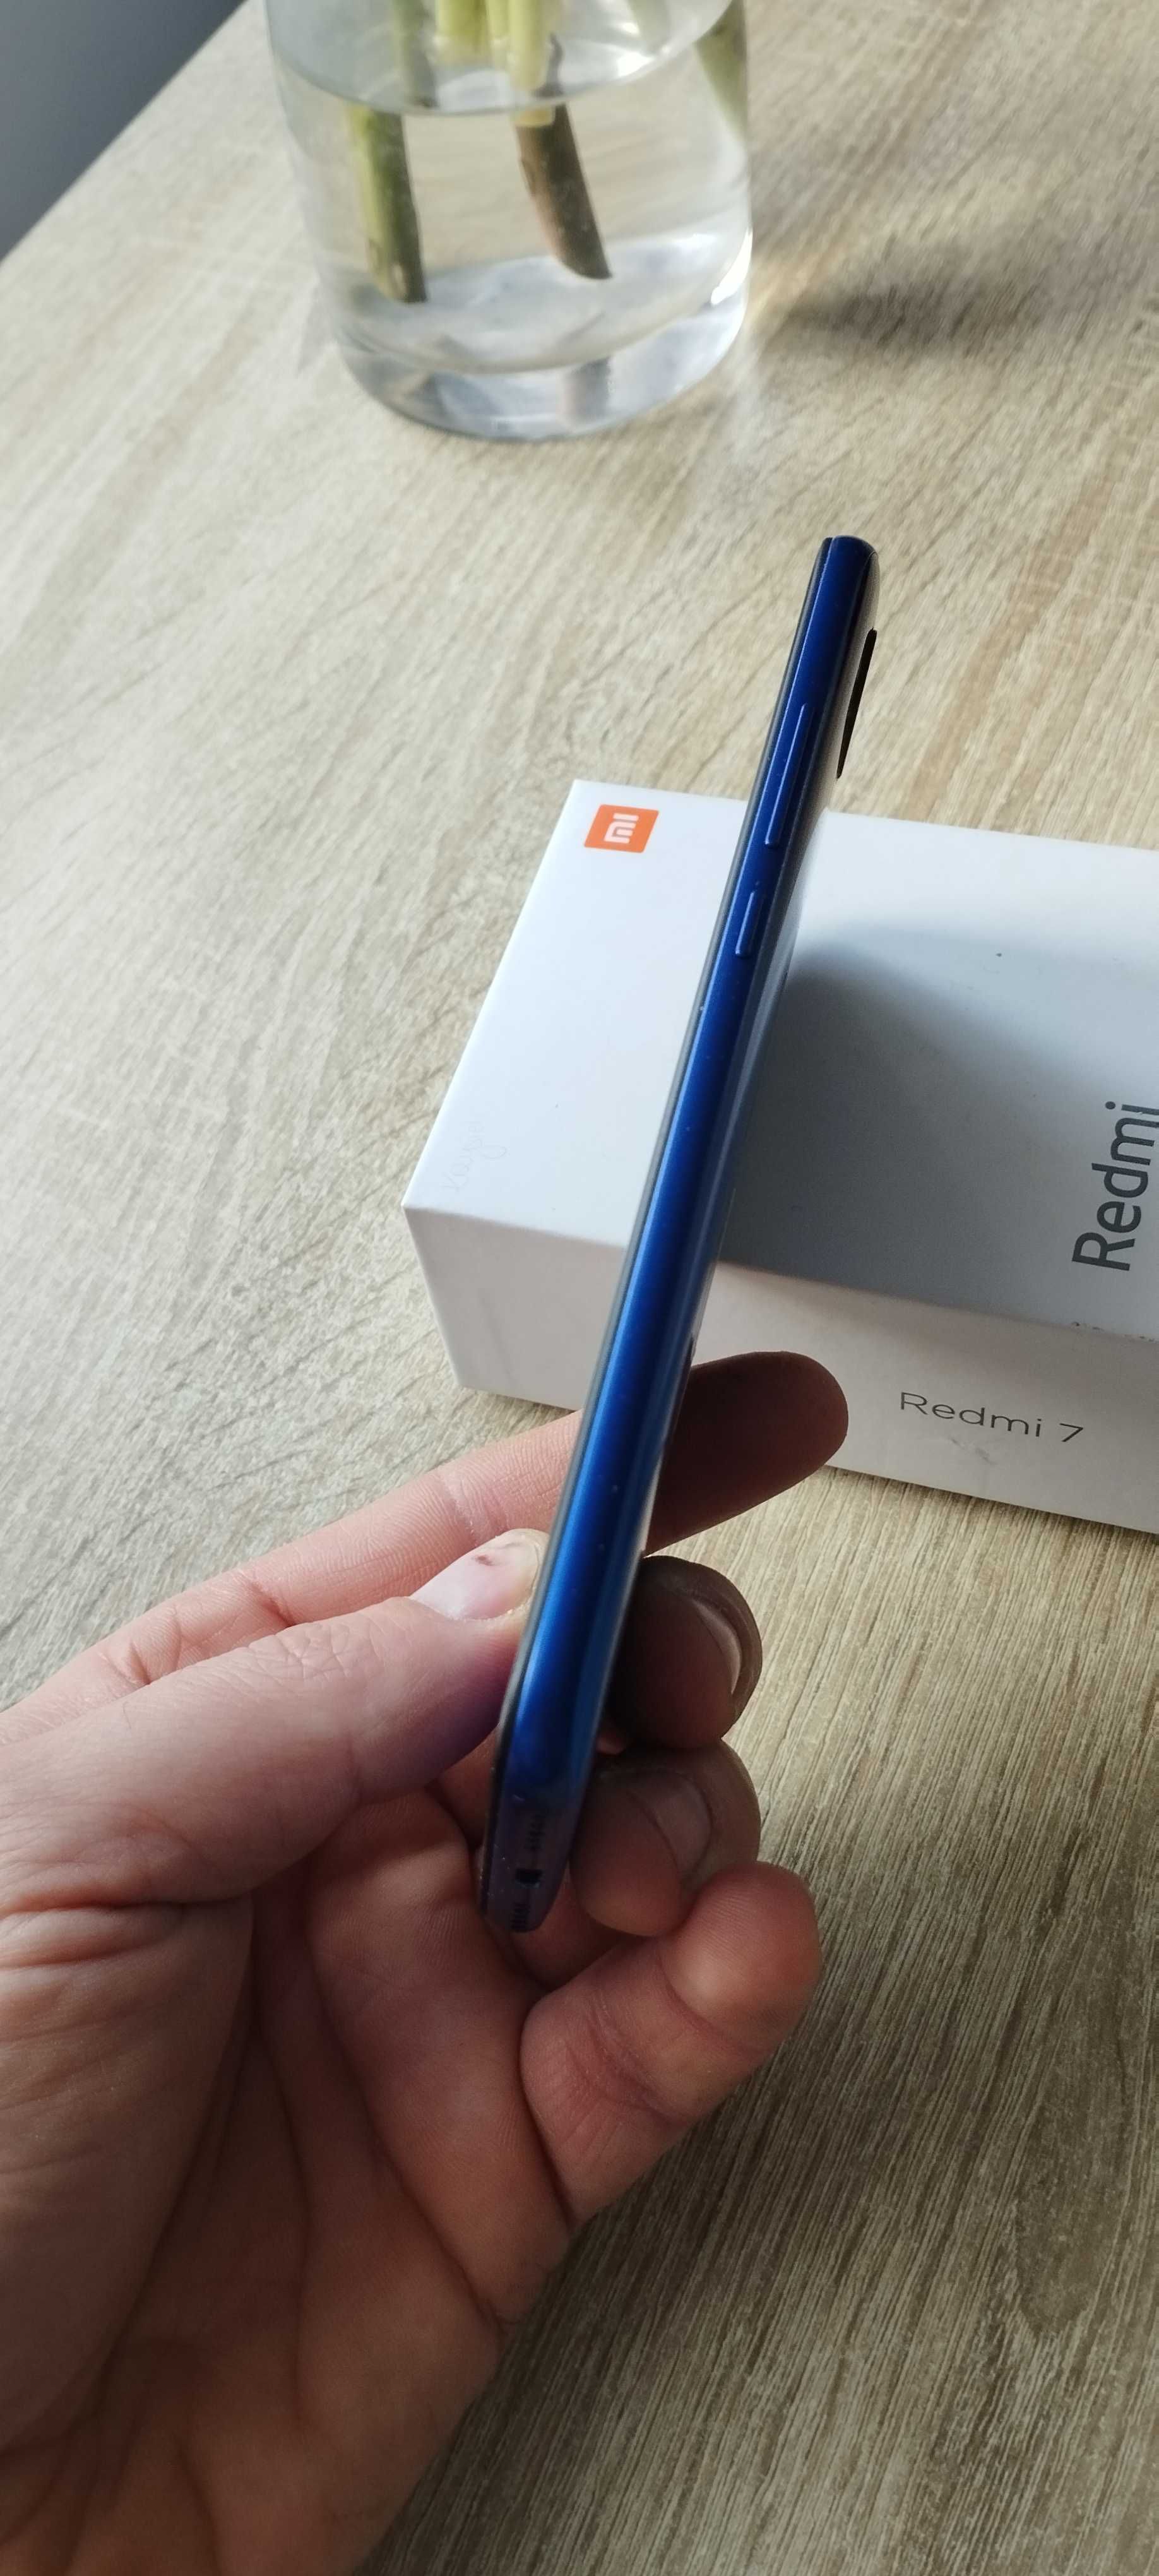 Xiaomi     Redmi 7